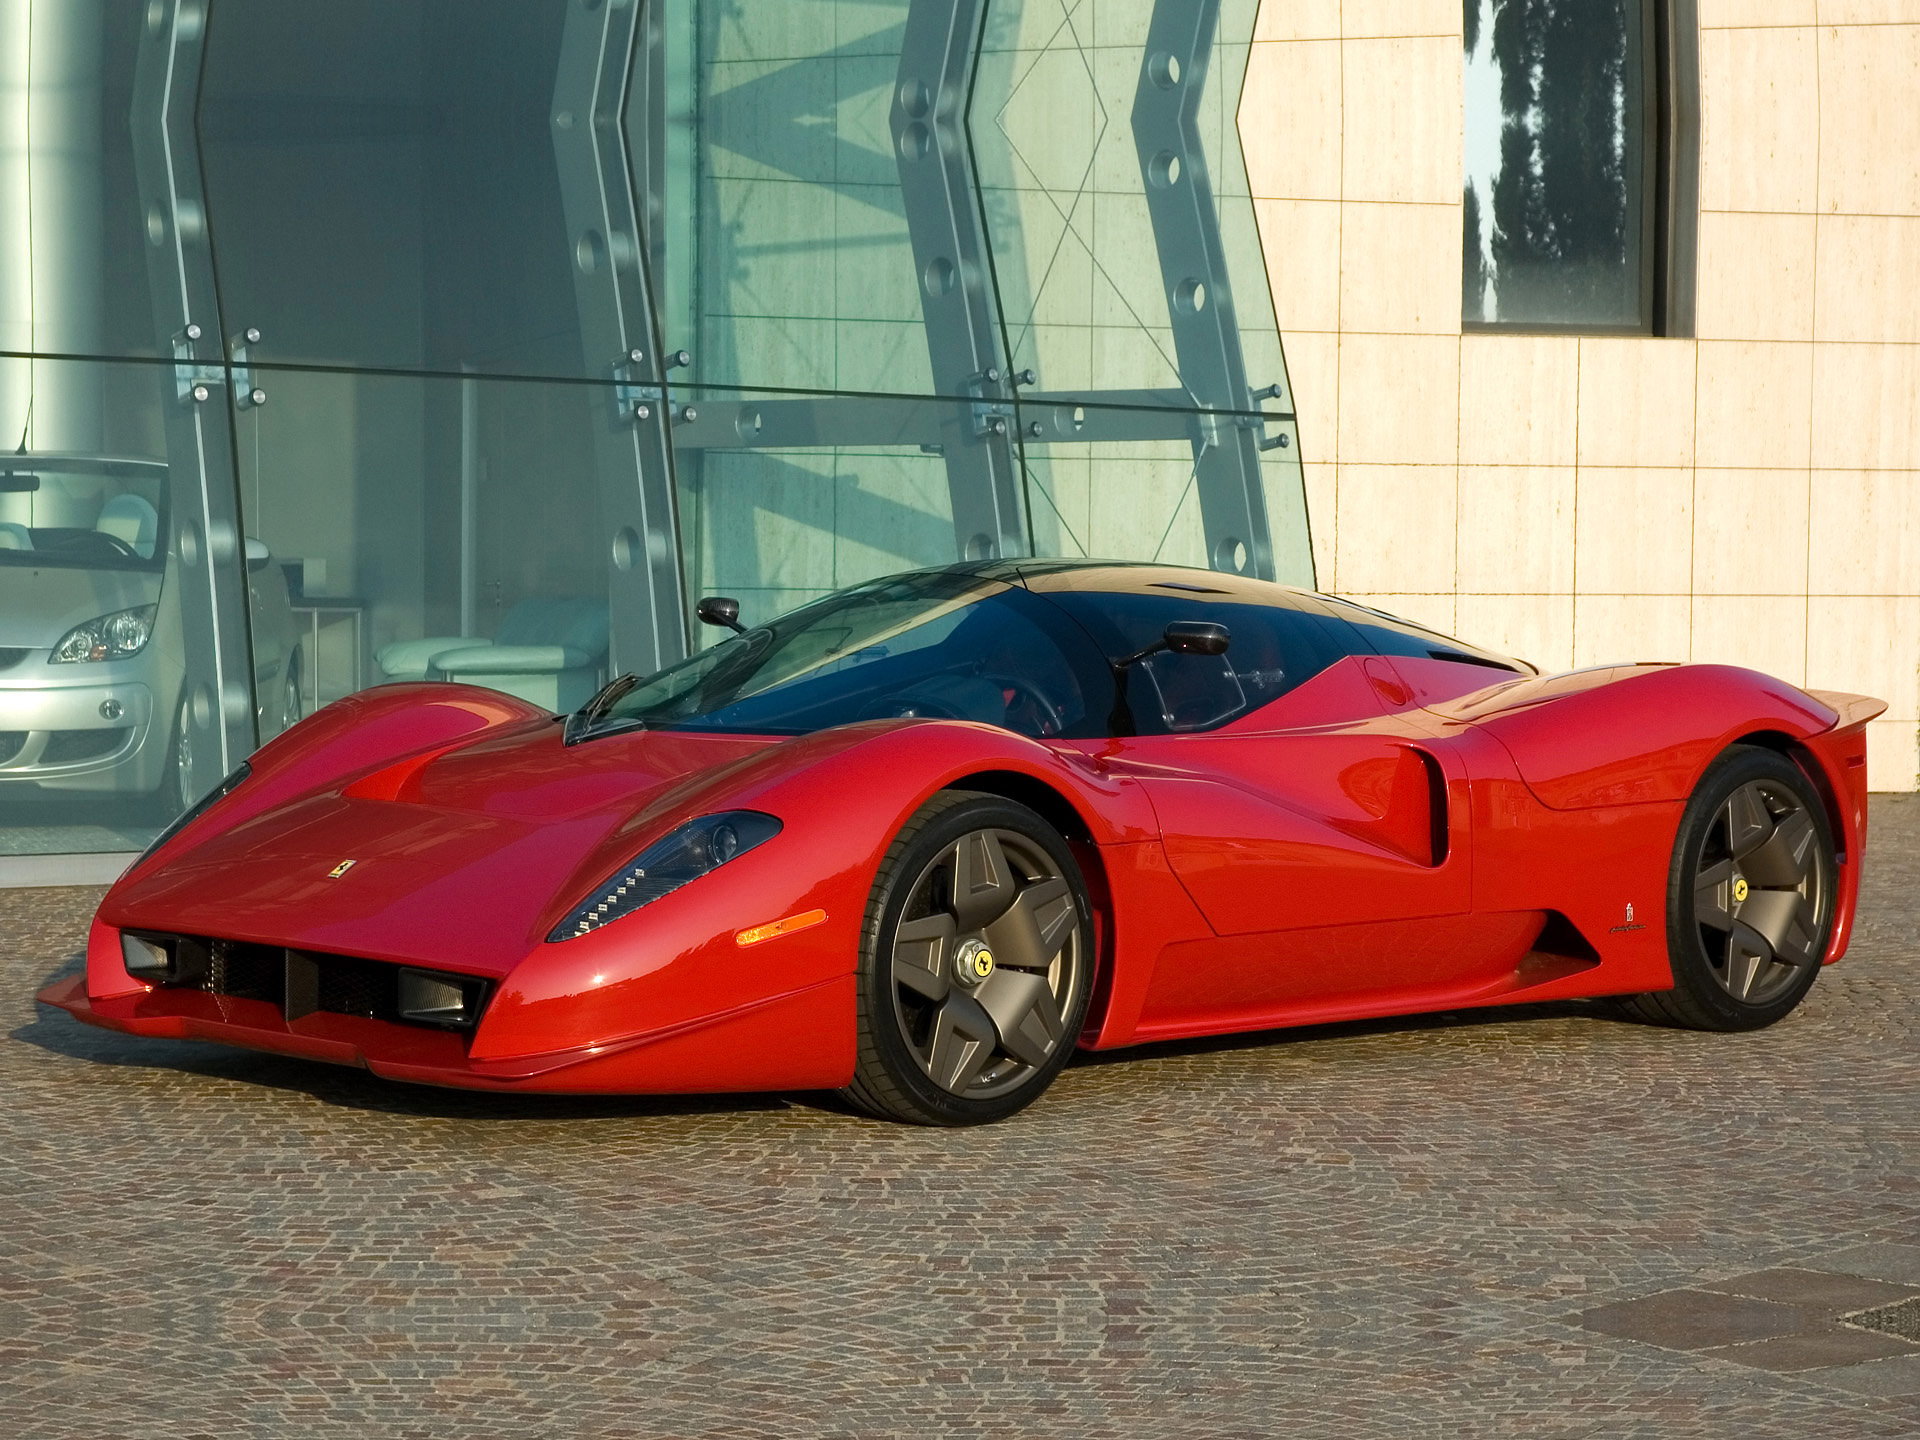 Meilleurs fonds d'écran Ferrari Pininfarina P4/5 Concept pour l'écran du téléphone